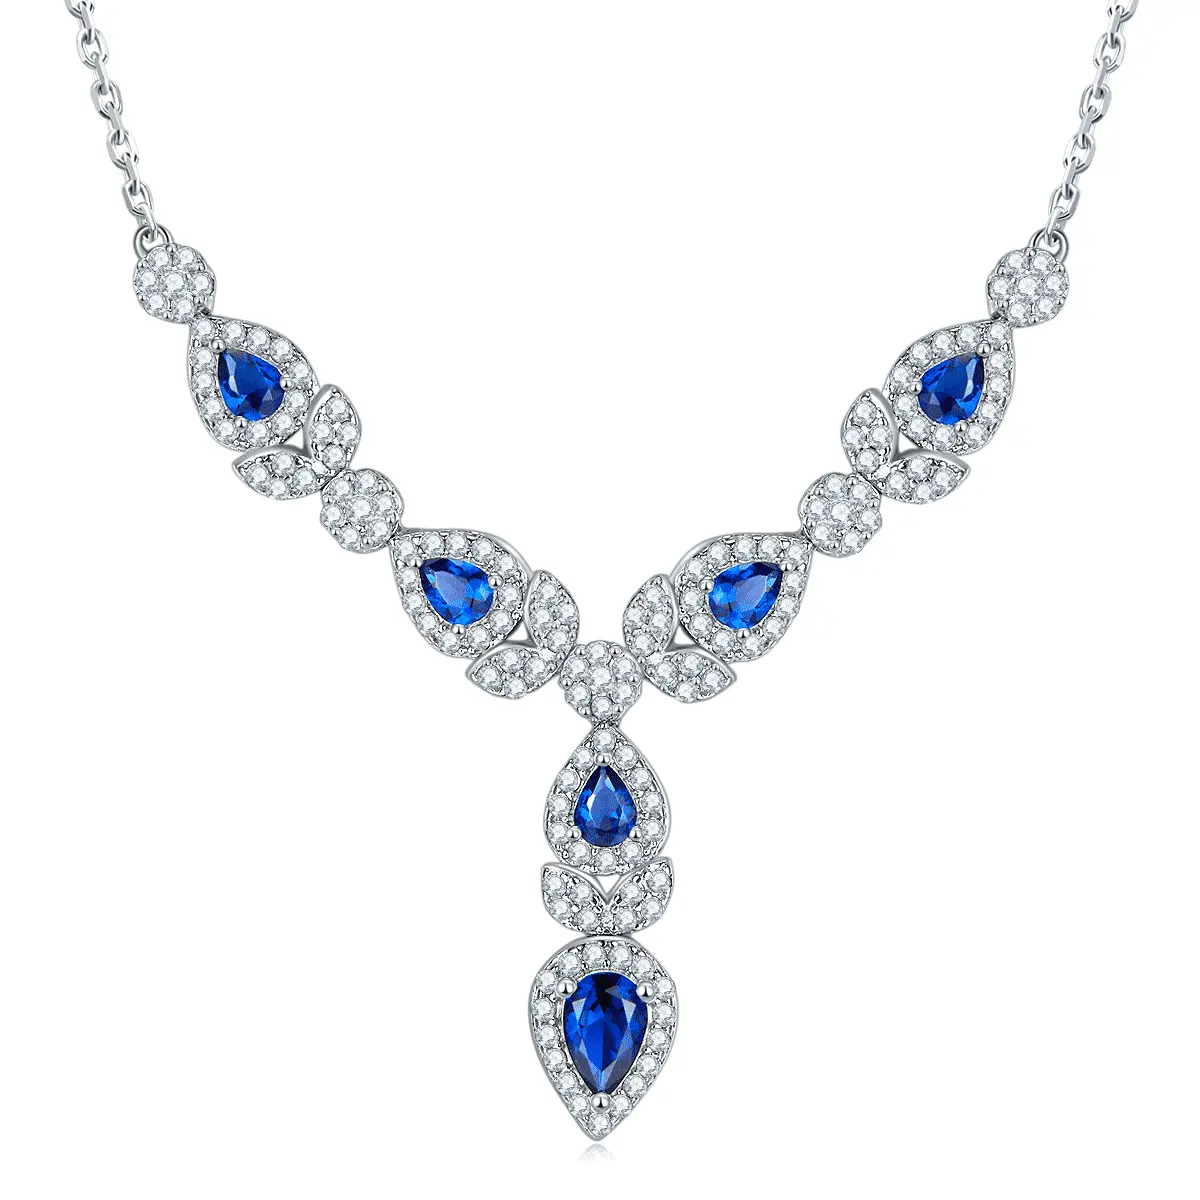 Colar de cristal de zircônia azul profundo para casamento e noivado, joia de prata esterlina 925, moda europeia, joia da moda